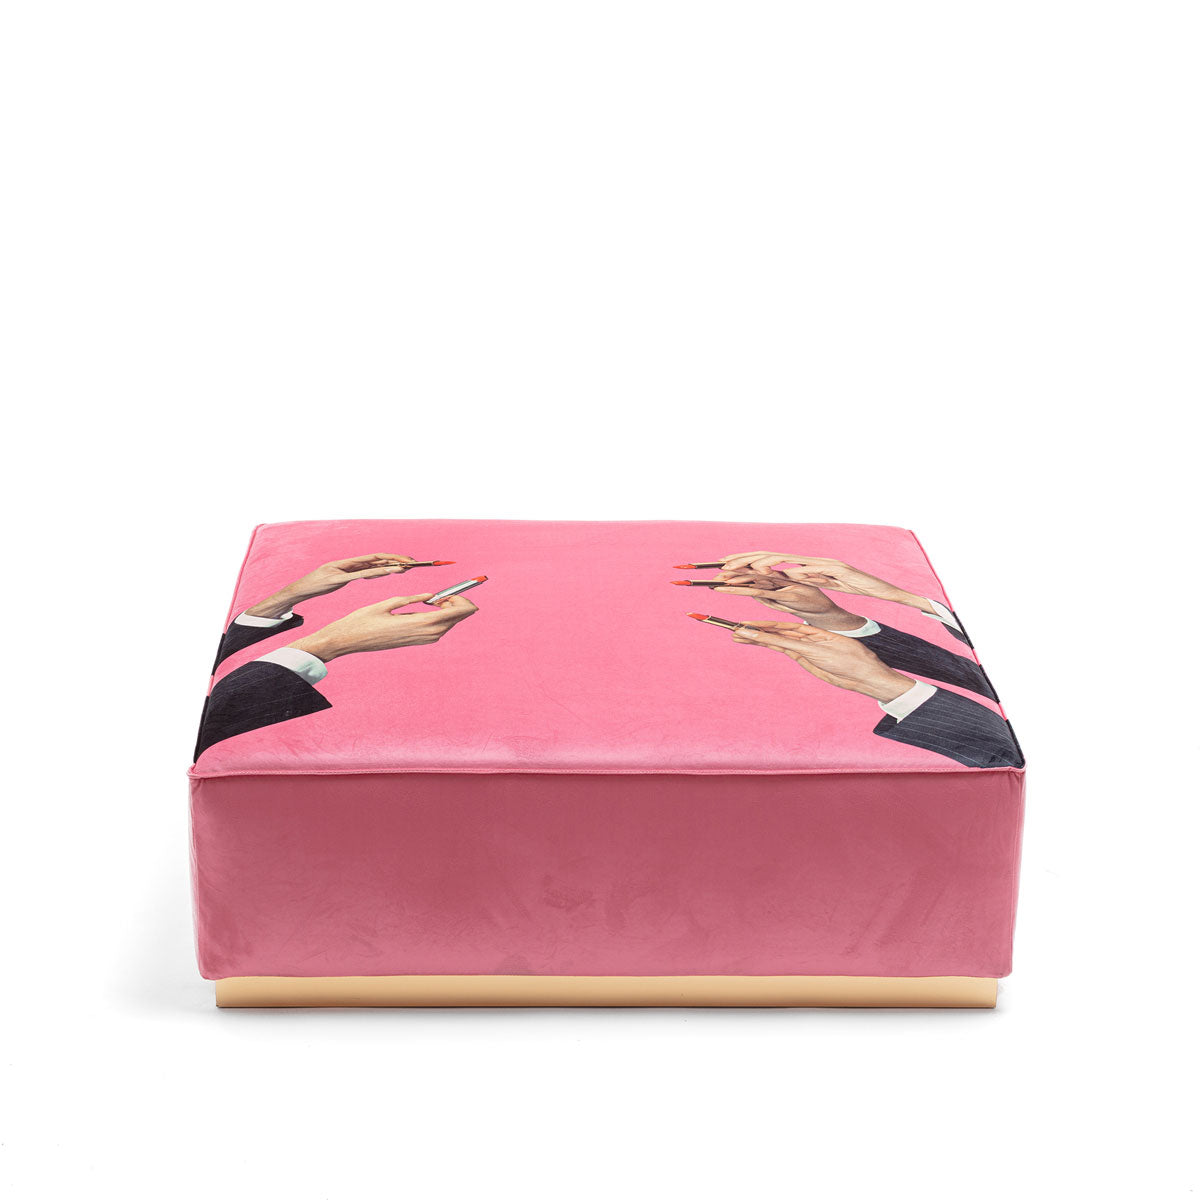 Seletti X Toiletpaper Modular Pouf &#39;Lipsticks Pink&#39;